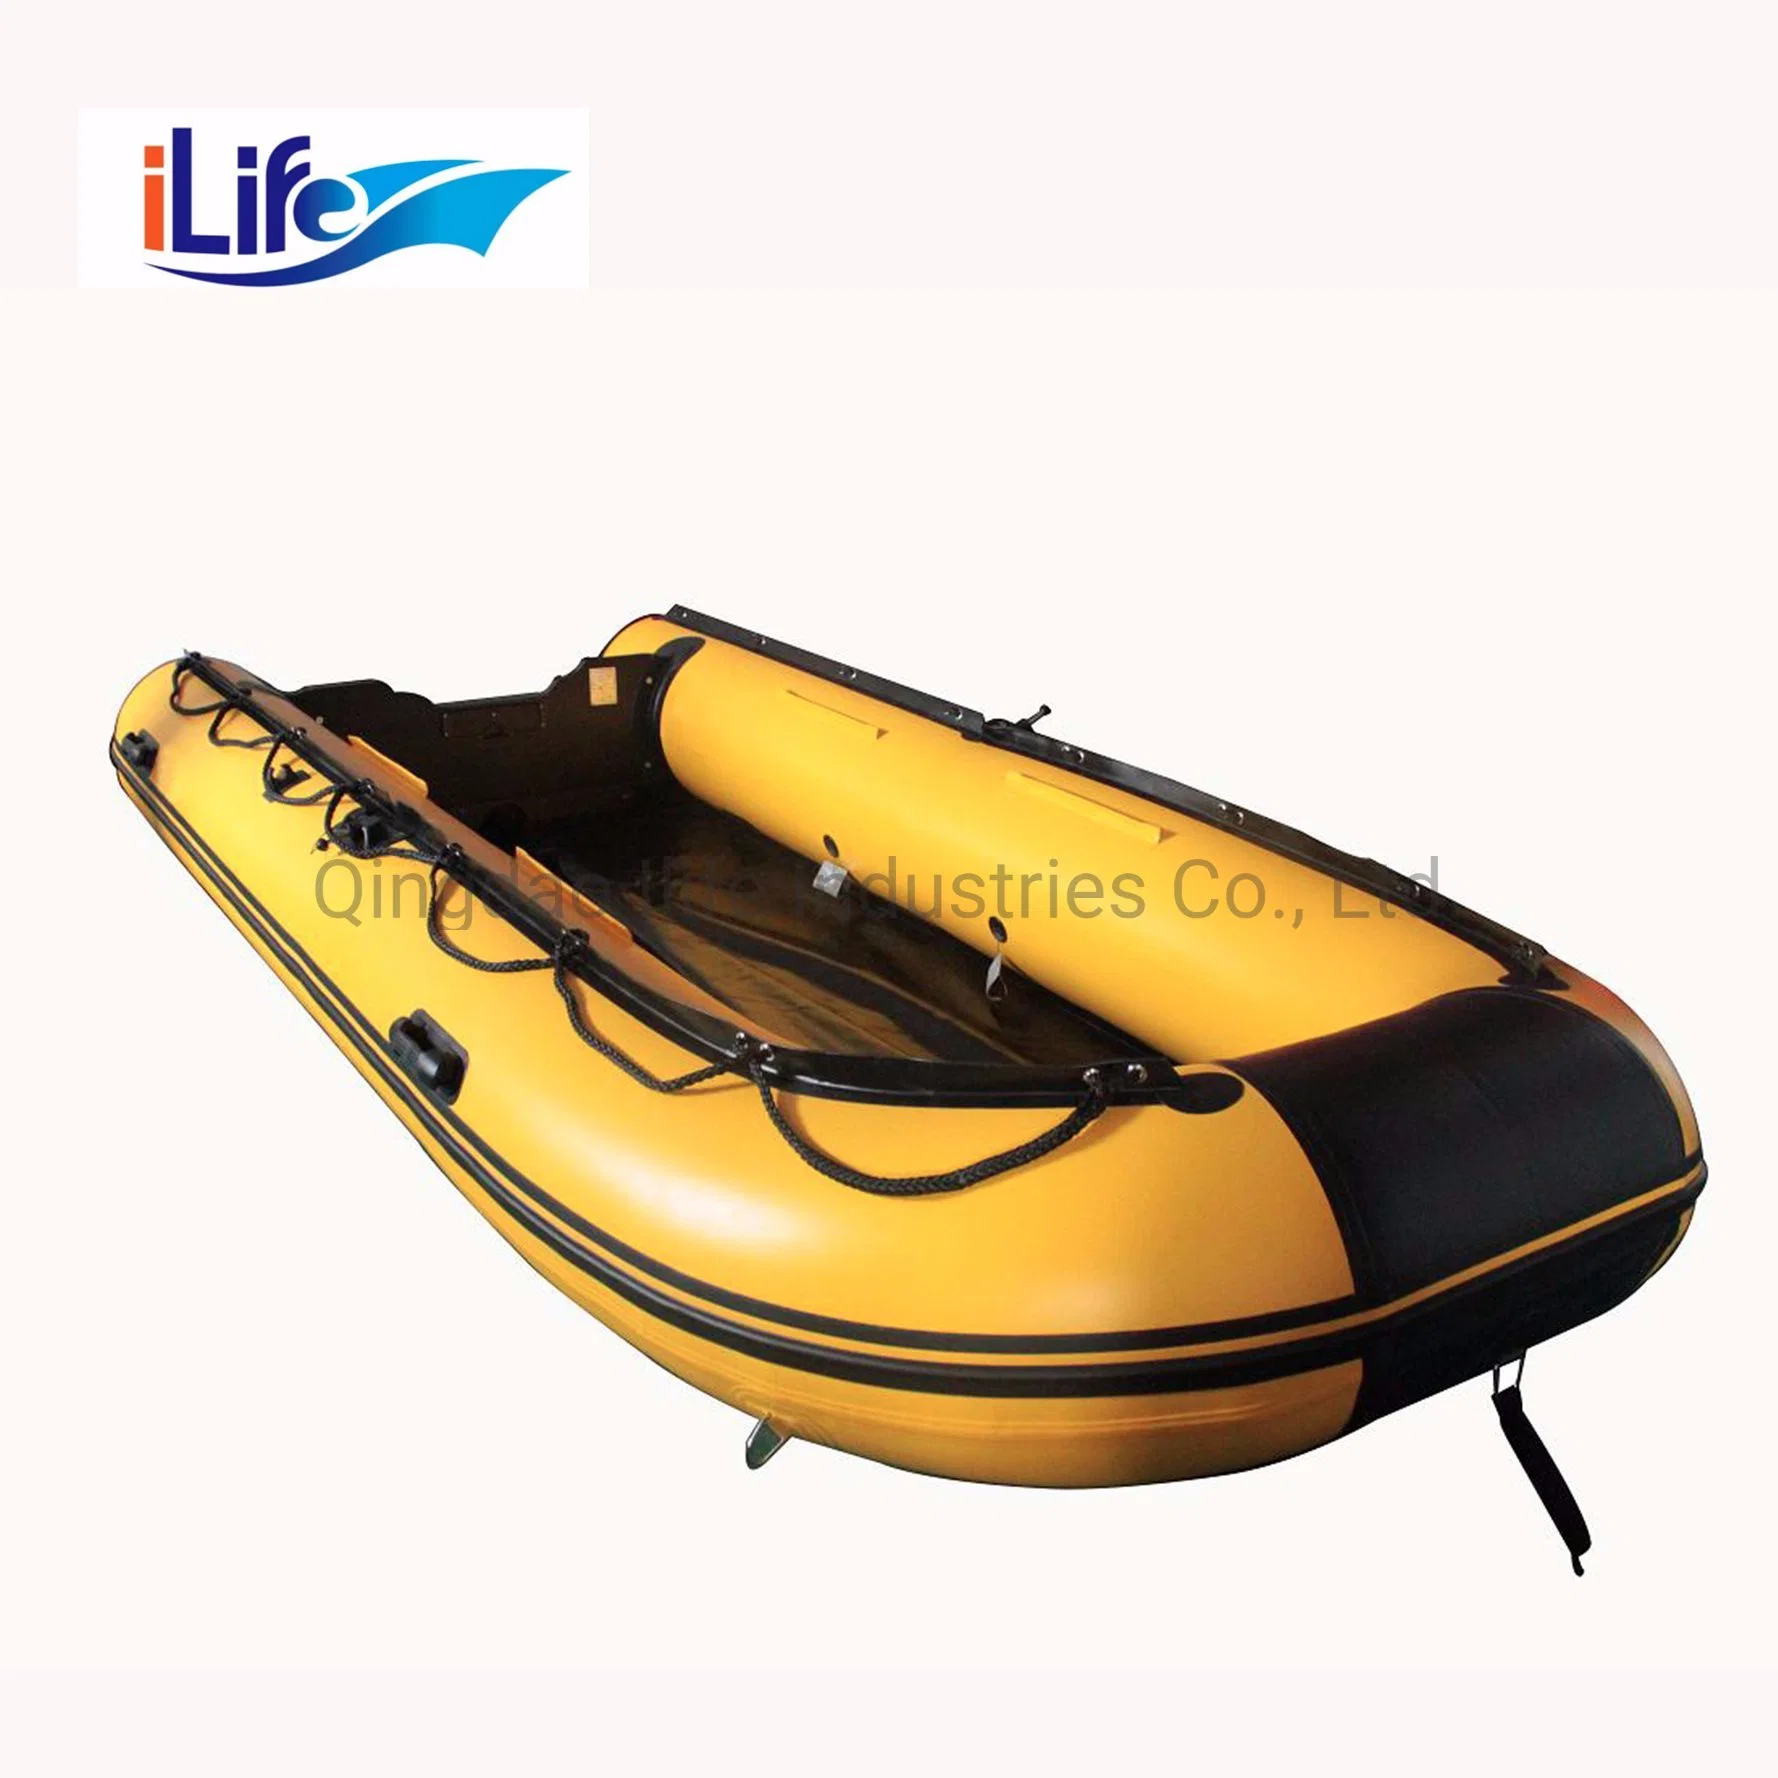 ILife 4,3m Amarillo PVC/Hypalon Inflatable Rescue Fishing Rubber Boat Con aluminio/Cosido de caída/Piso contrachapado para Rescate